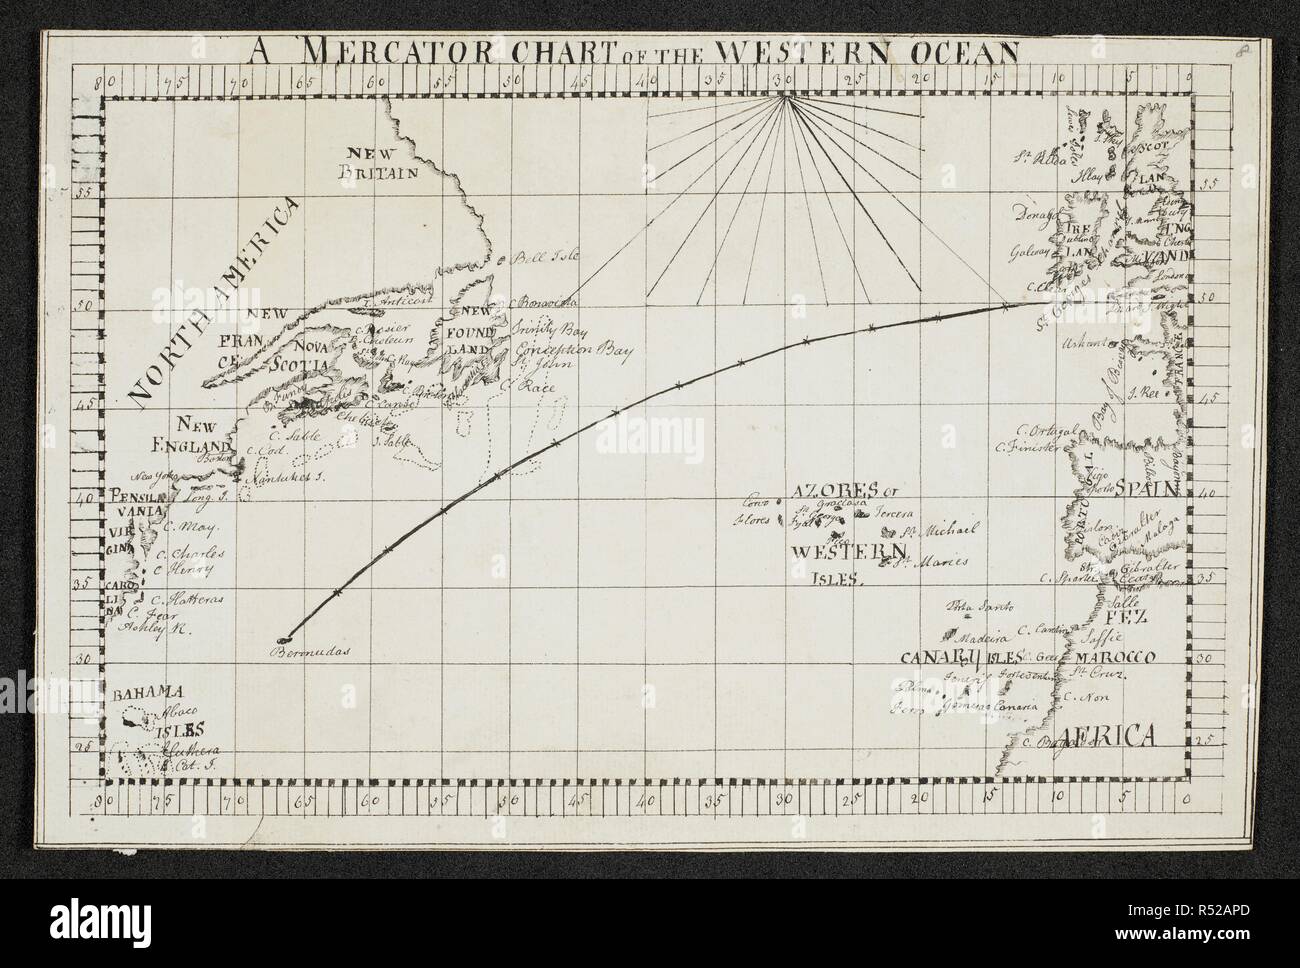 Mercator Chart